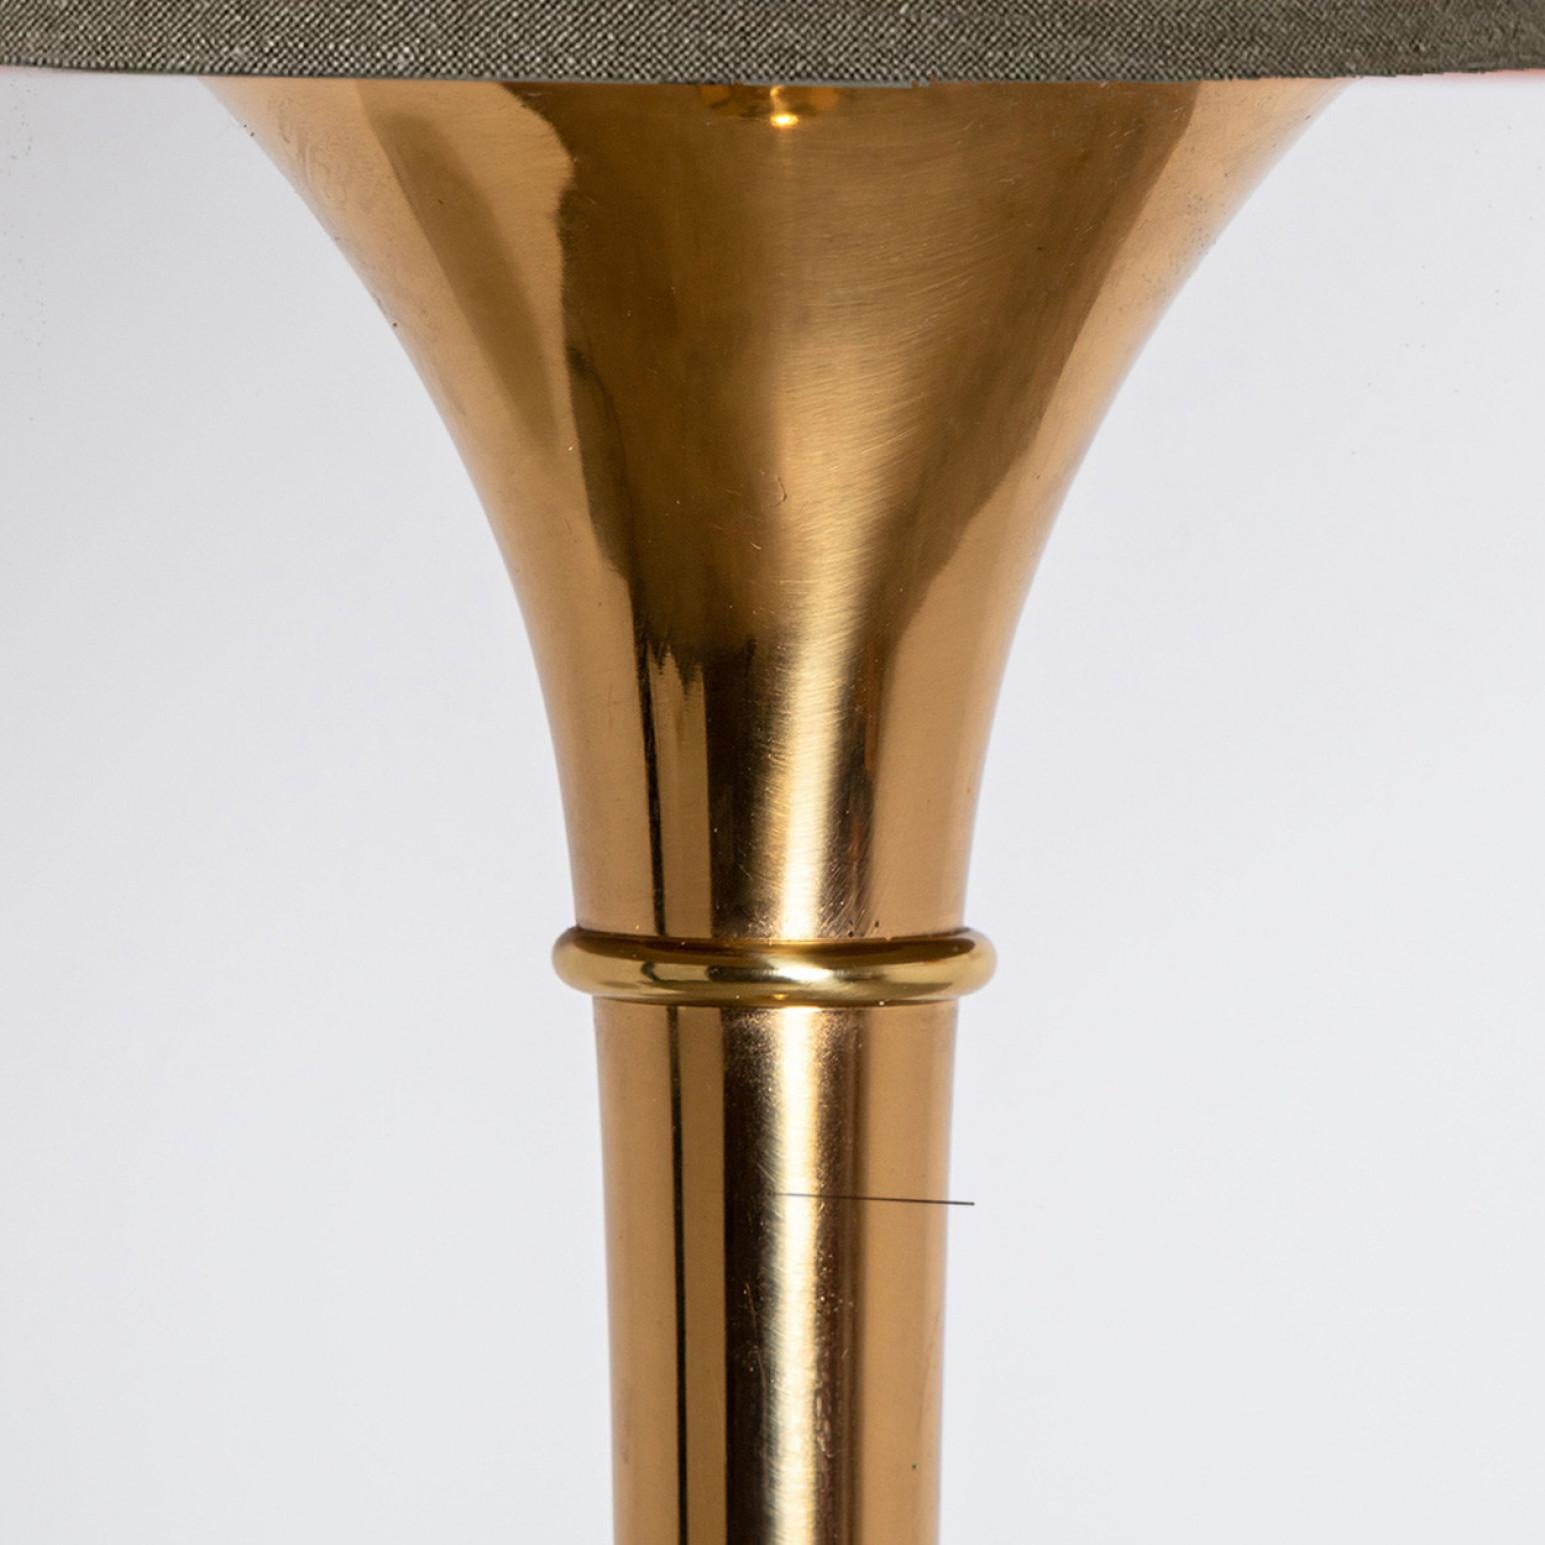 Paire d'élégants lampadaires en bois en laiton doré Modèle conçu par Ingo Maurer, 1968 pour Design/One Munich, Allemagne.
Avec de nouveaux abat-jour en bois fabriqués sur mesure avec un abat-jour intérieur en bronze. Réalisé par René Houben.